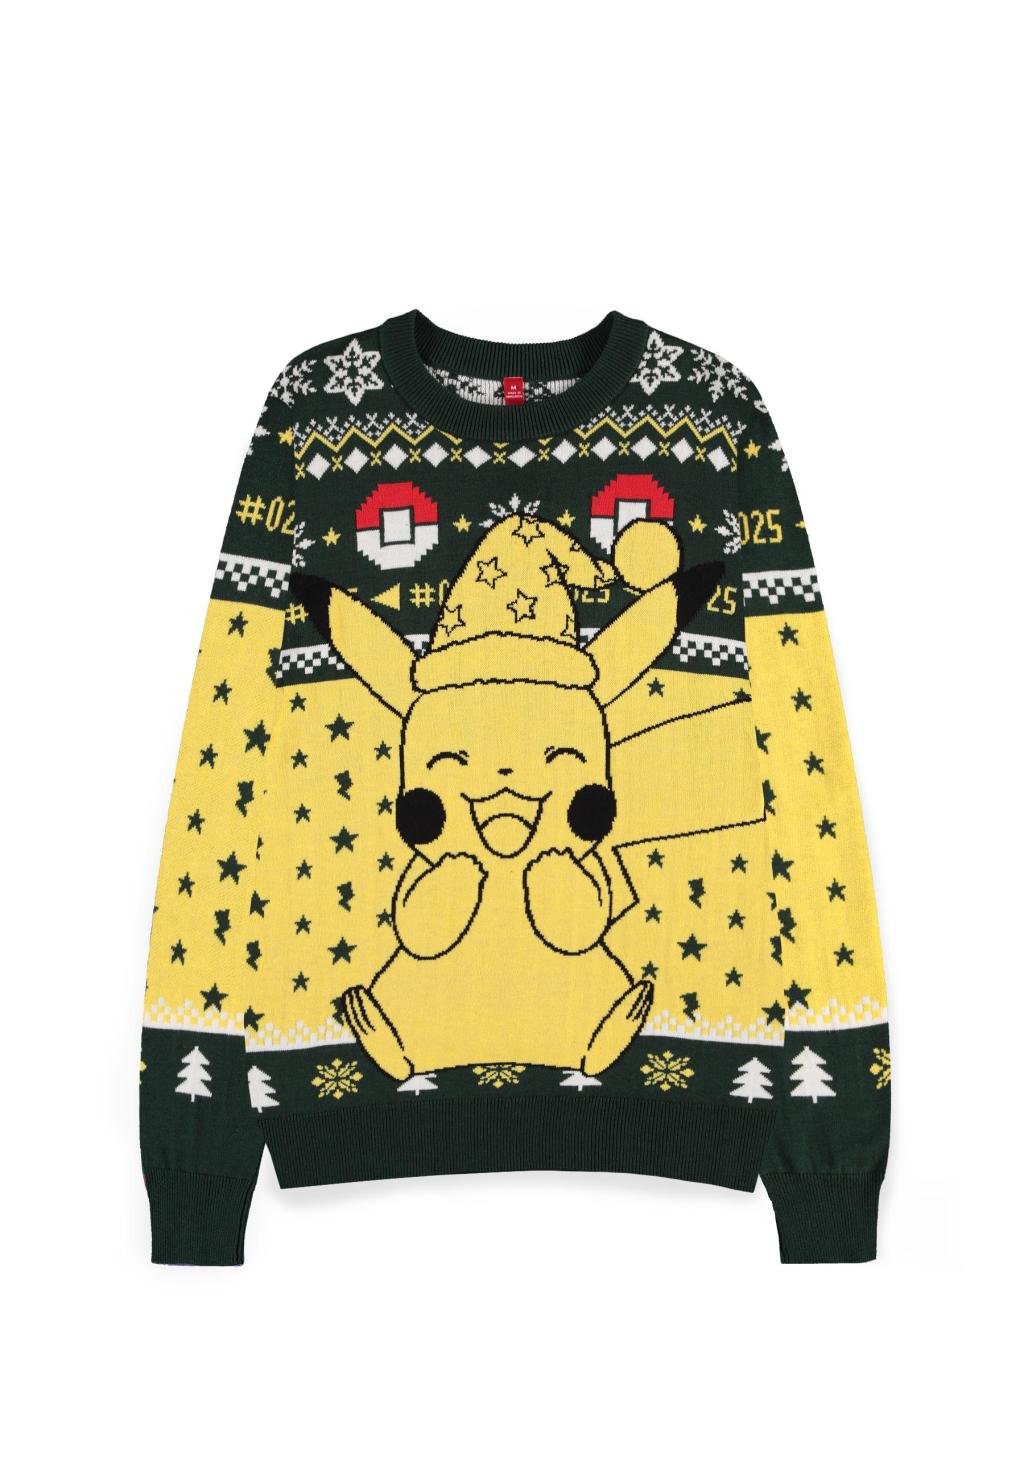 POKEMON - Happy Pikachu - Weihnachtspullover (XL)